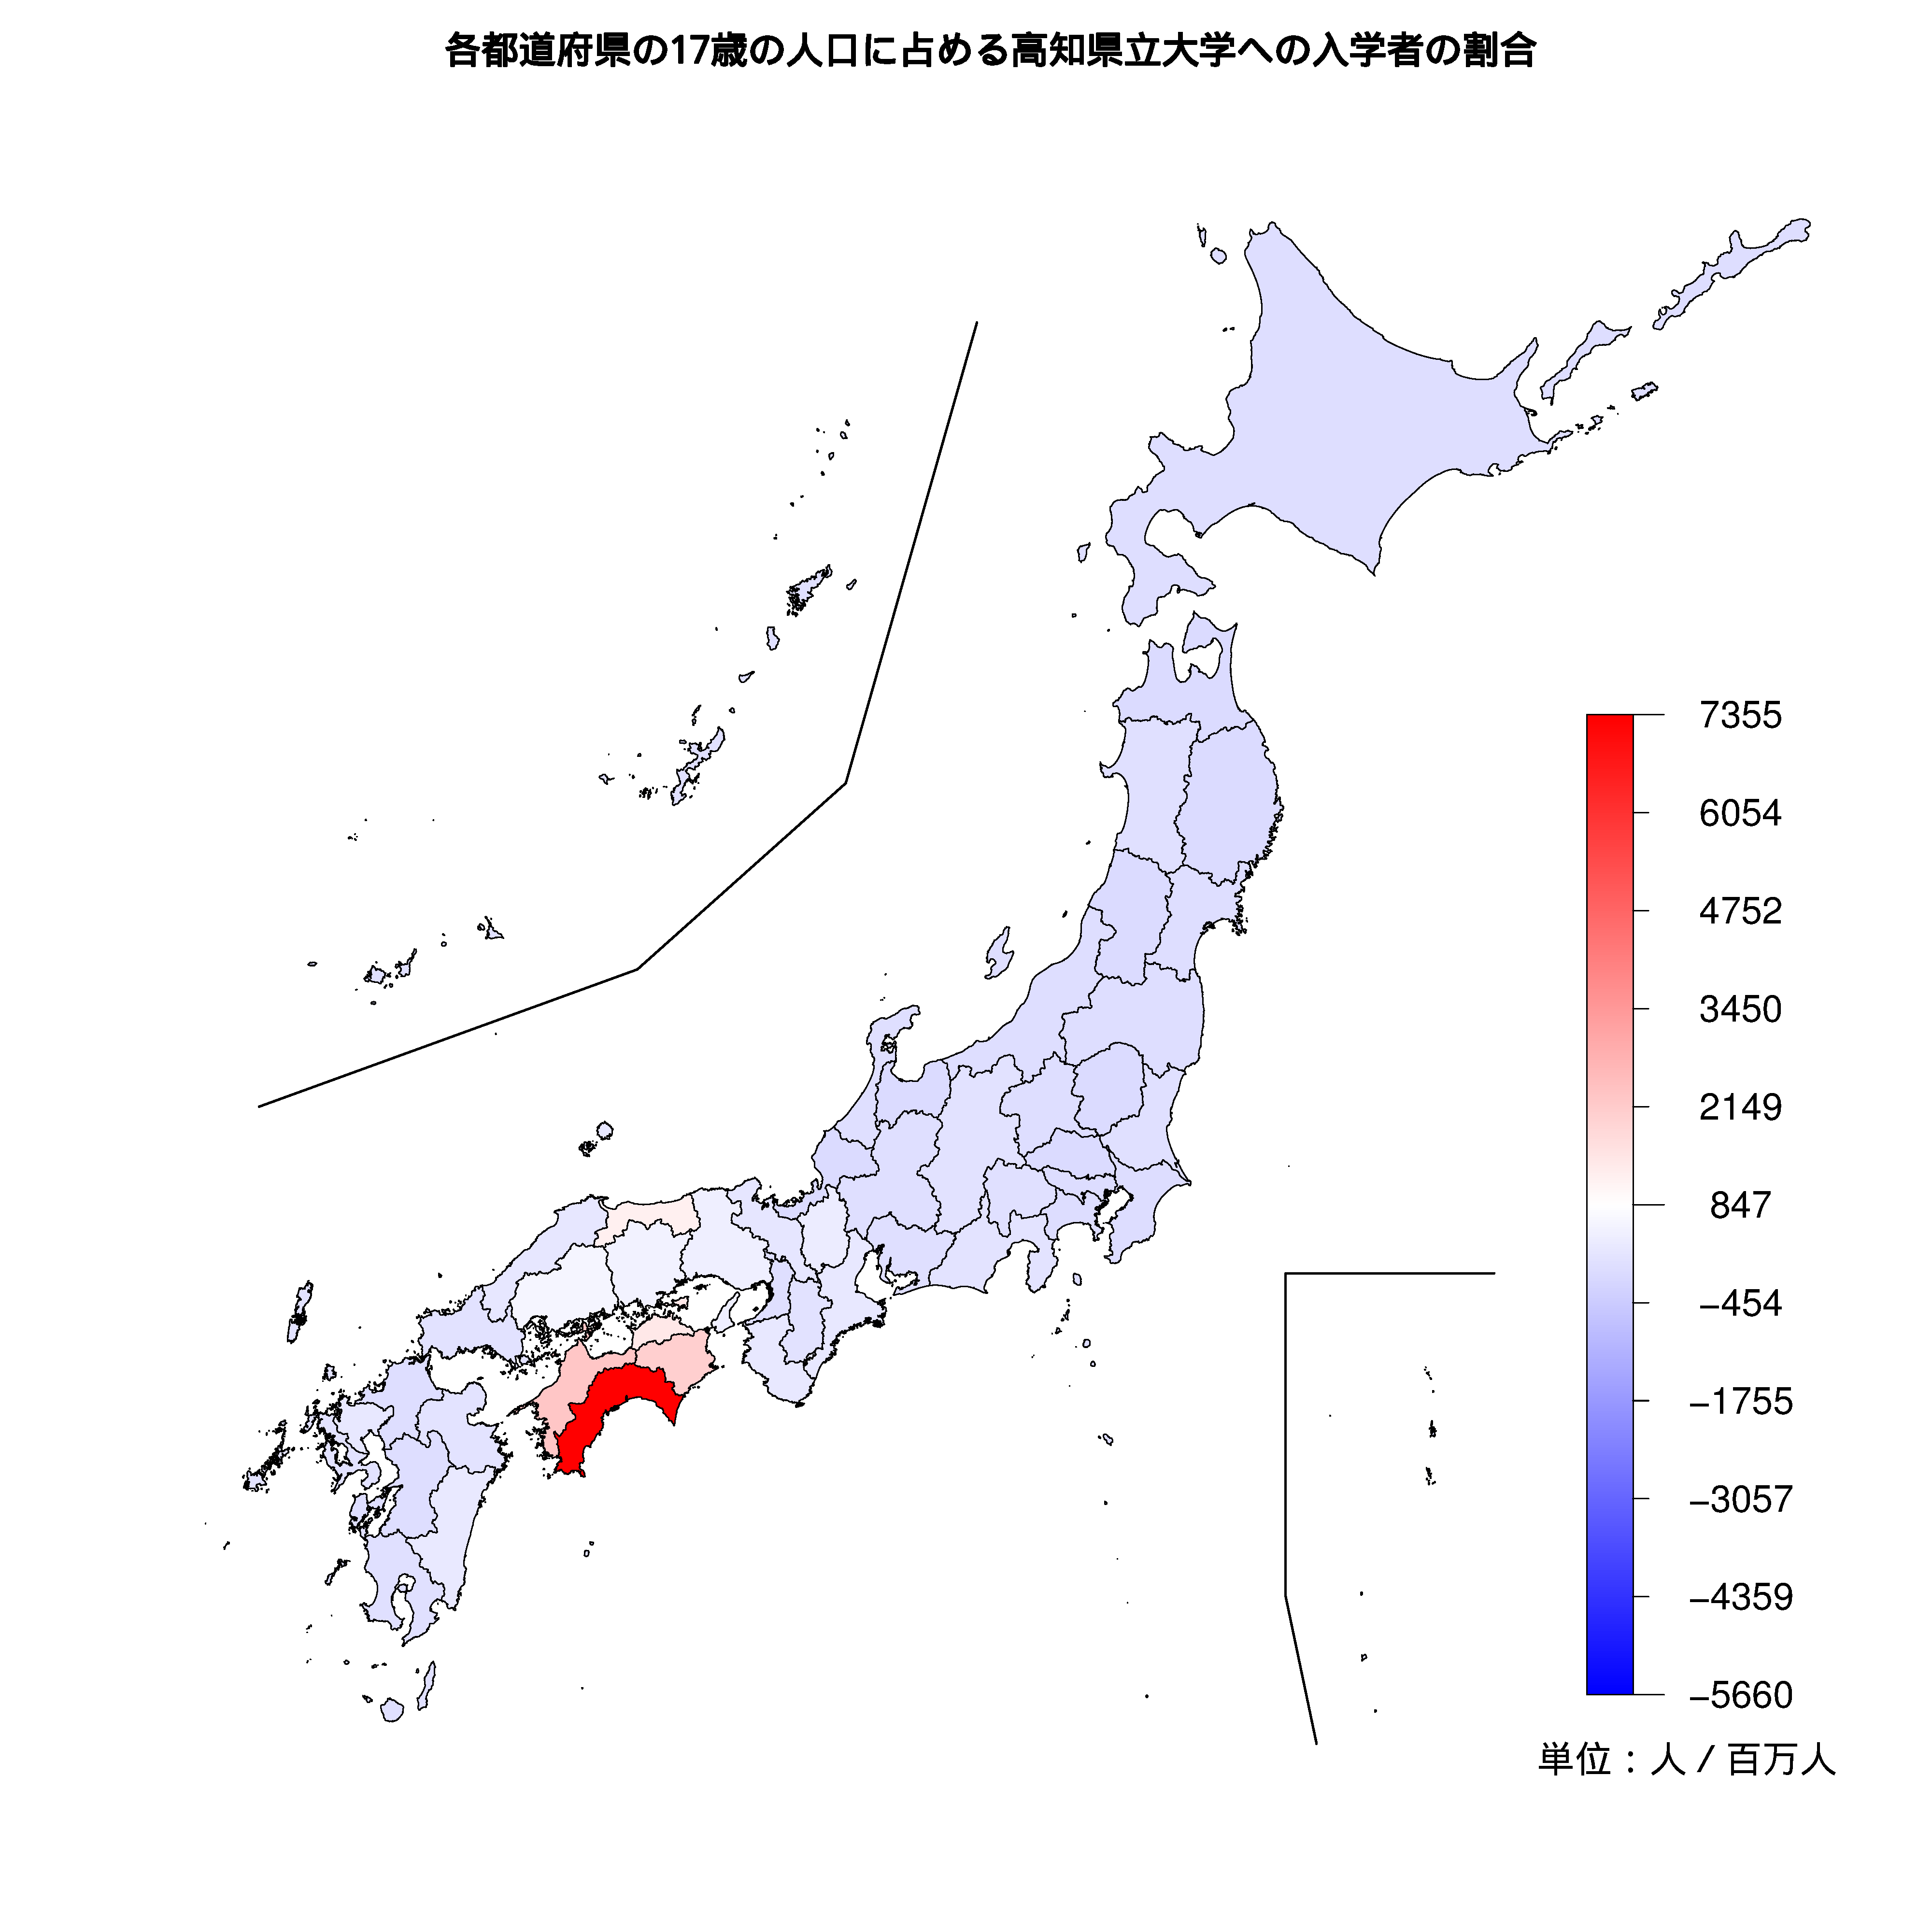 高知県立大学への入学者が多い都道府県の色分け地図